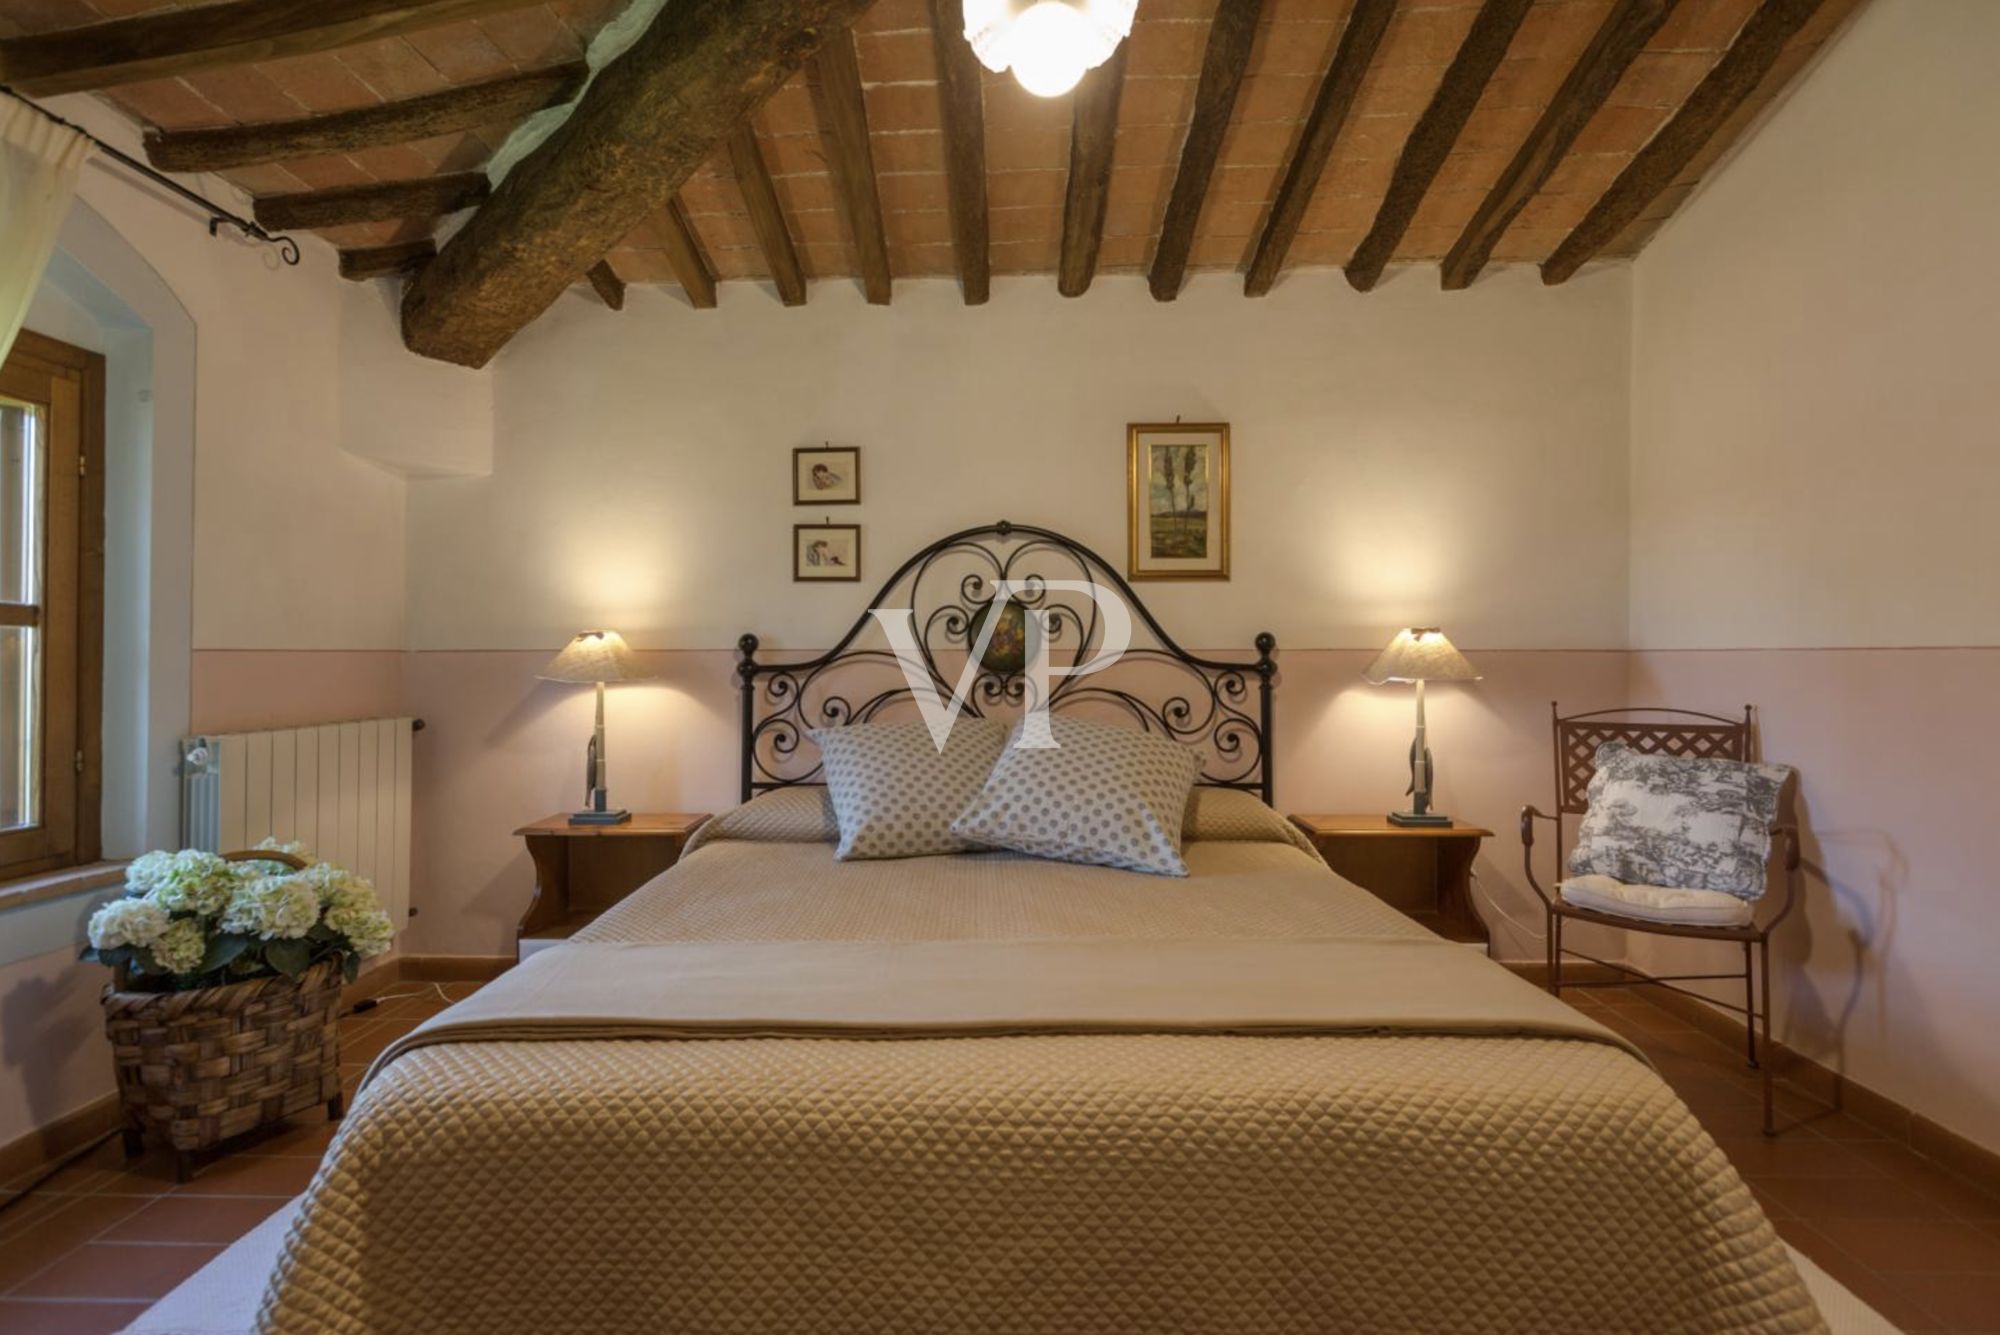 Ferme historique toscane située dans un cadre idyllique avec agritourisme et grand choix de loisirs